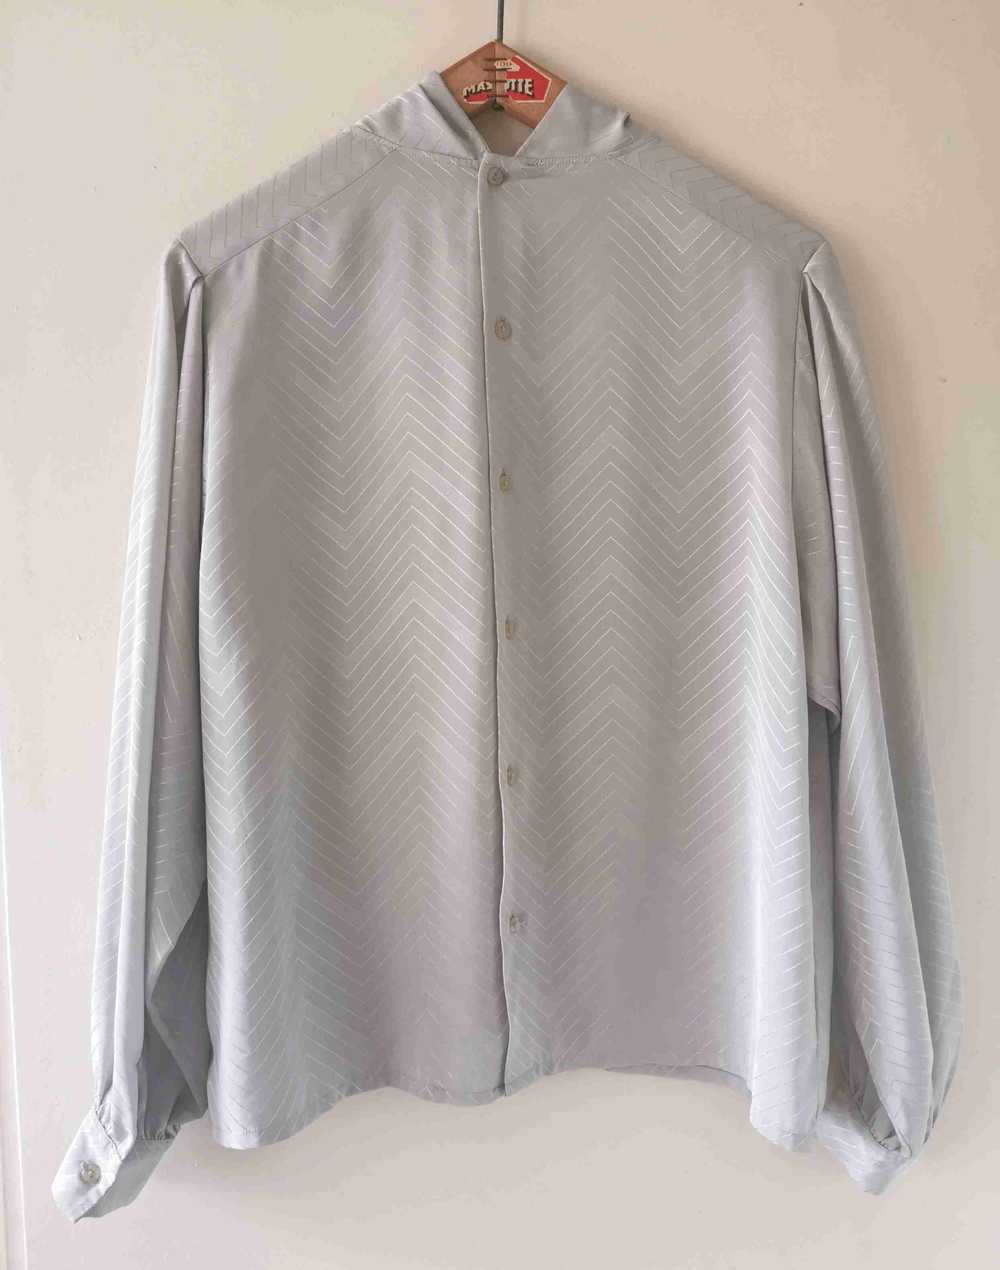 Pierre Cardin blouse - Pierre Cardin pearl gray b… - image 5